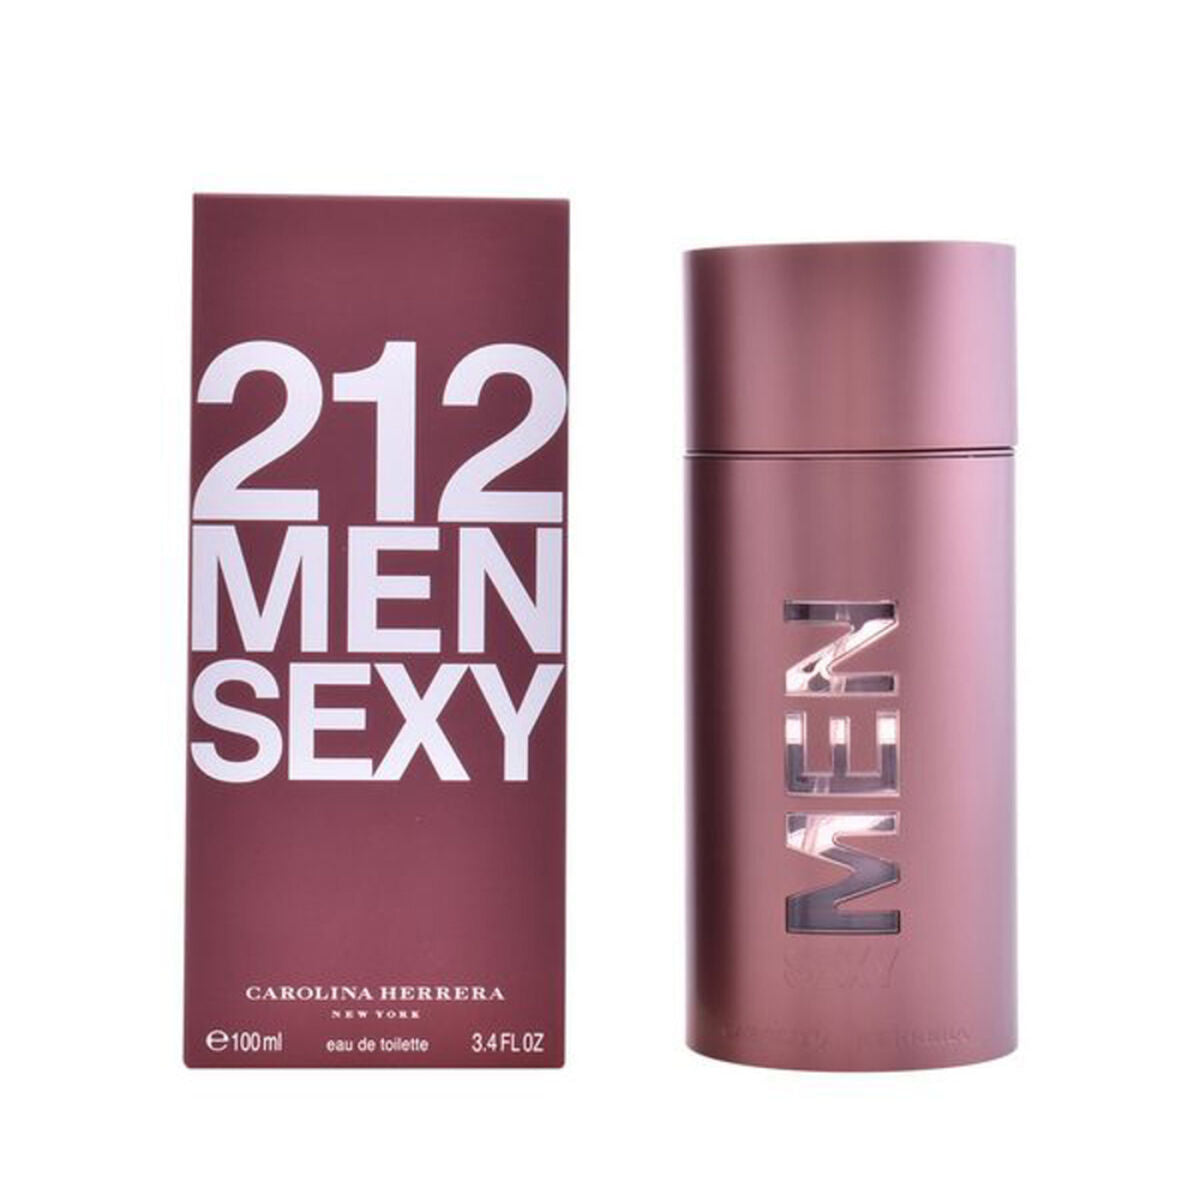 Perfume masculino Carolina Herrera EDT 212 Sexy 100 ml